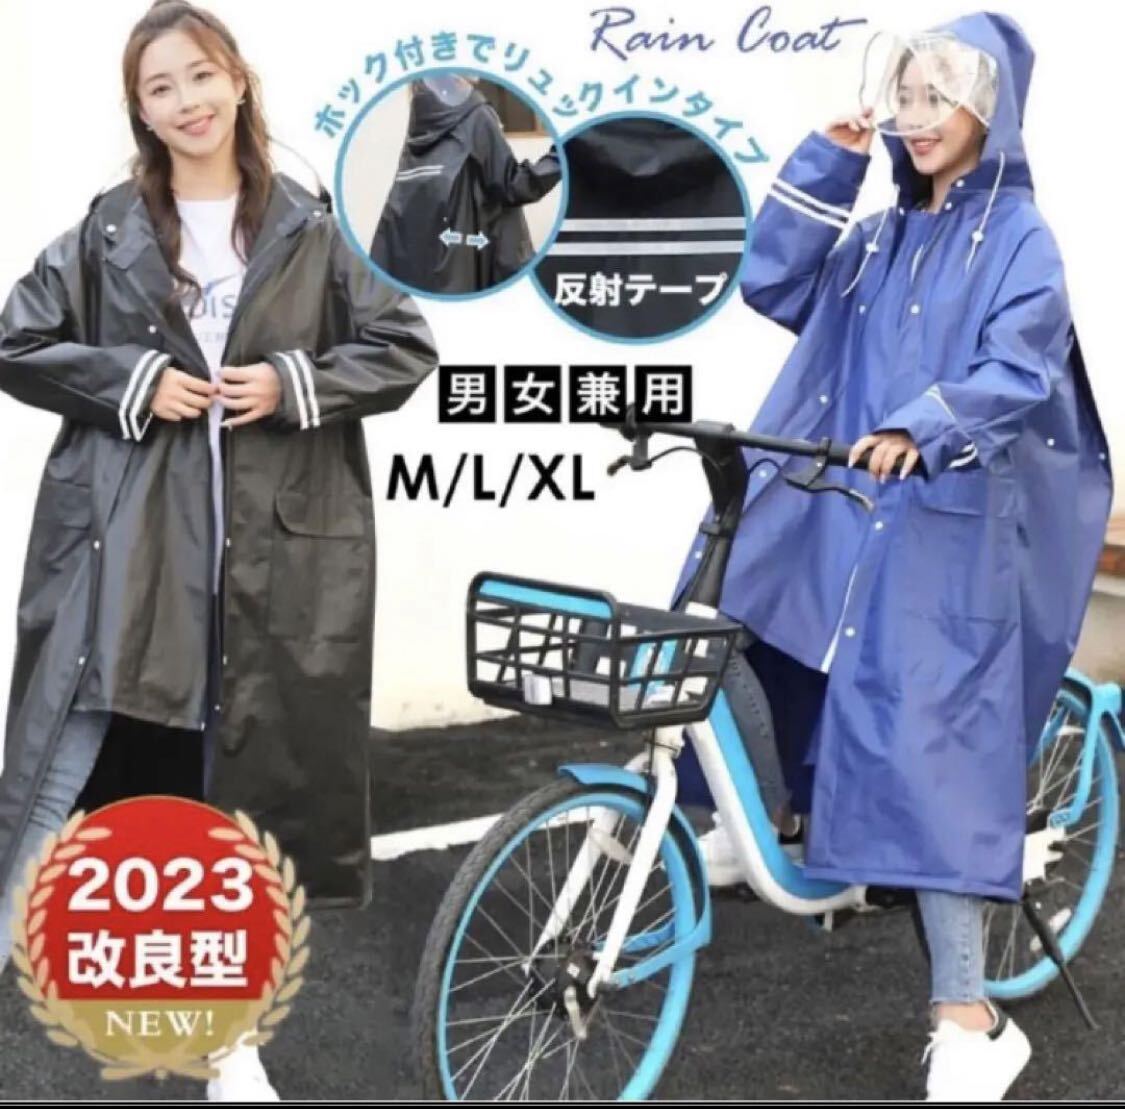 2023 новая модель плащ мужской женский велосипед ходить на работу посещение школы для непромокаемая одежда супер-легкий для мужчин и женщин дождь пончо для мужчин и женщин новая модель плащ 